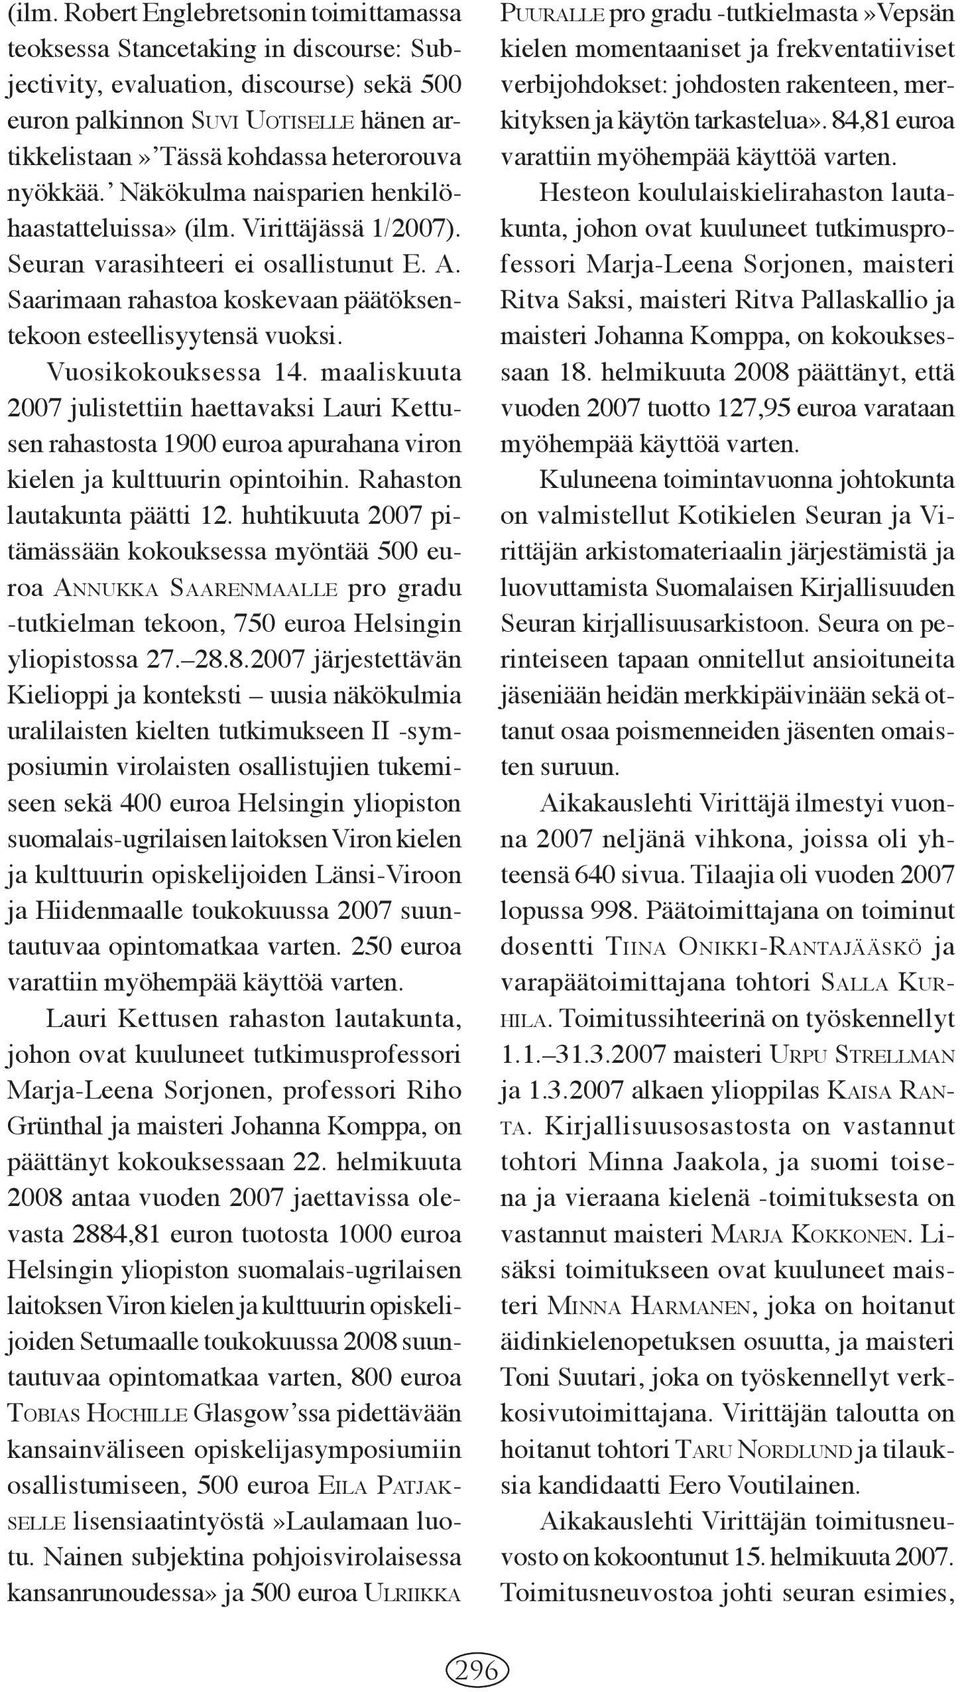 Saarimaan rahastoa kos ke vaan päätöksentekoon esteellisyytensä vuoksi. 2007 julistettiin haettavaksi Lauri Kettusen rahastosta 1900 euroa apurahana viron kielen ja kulttuurin opintoihin.